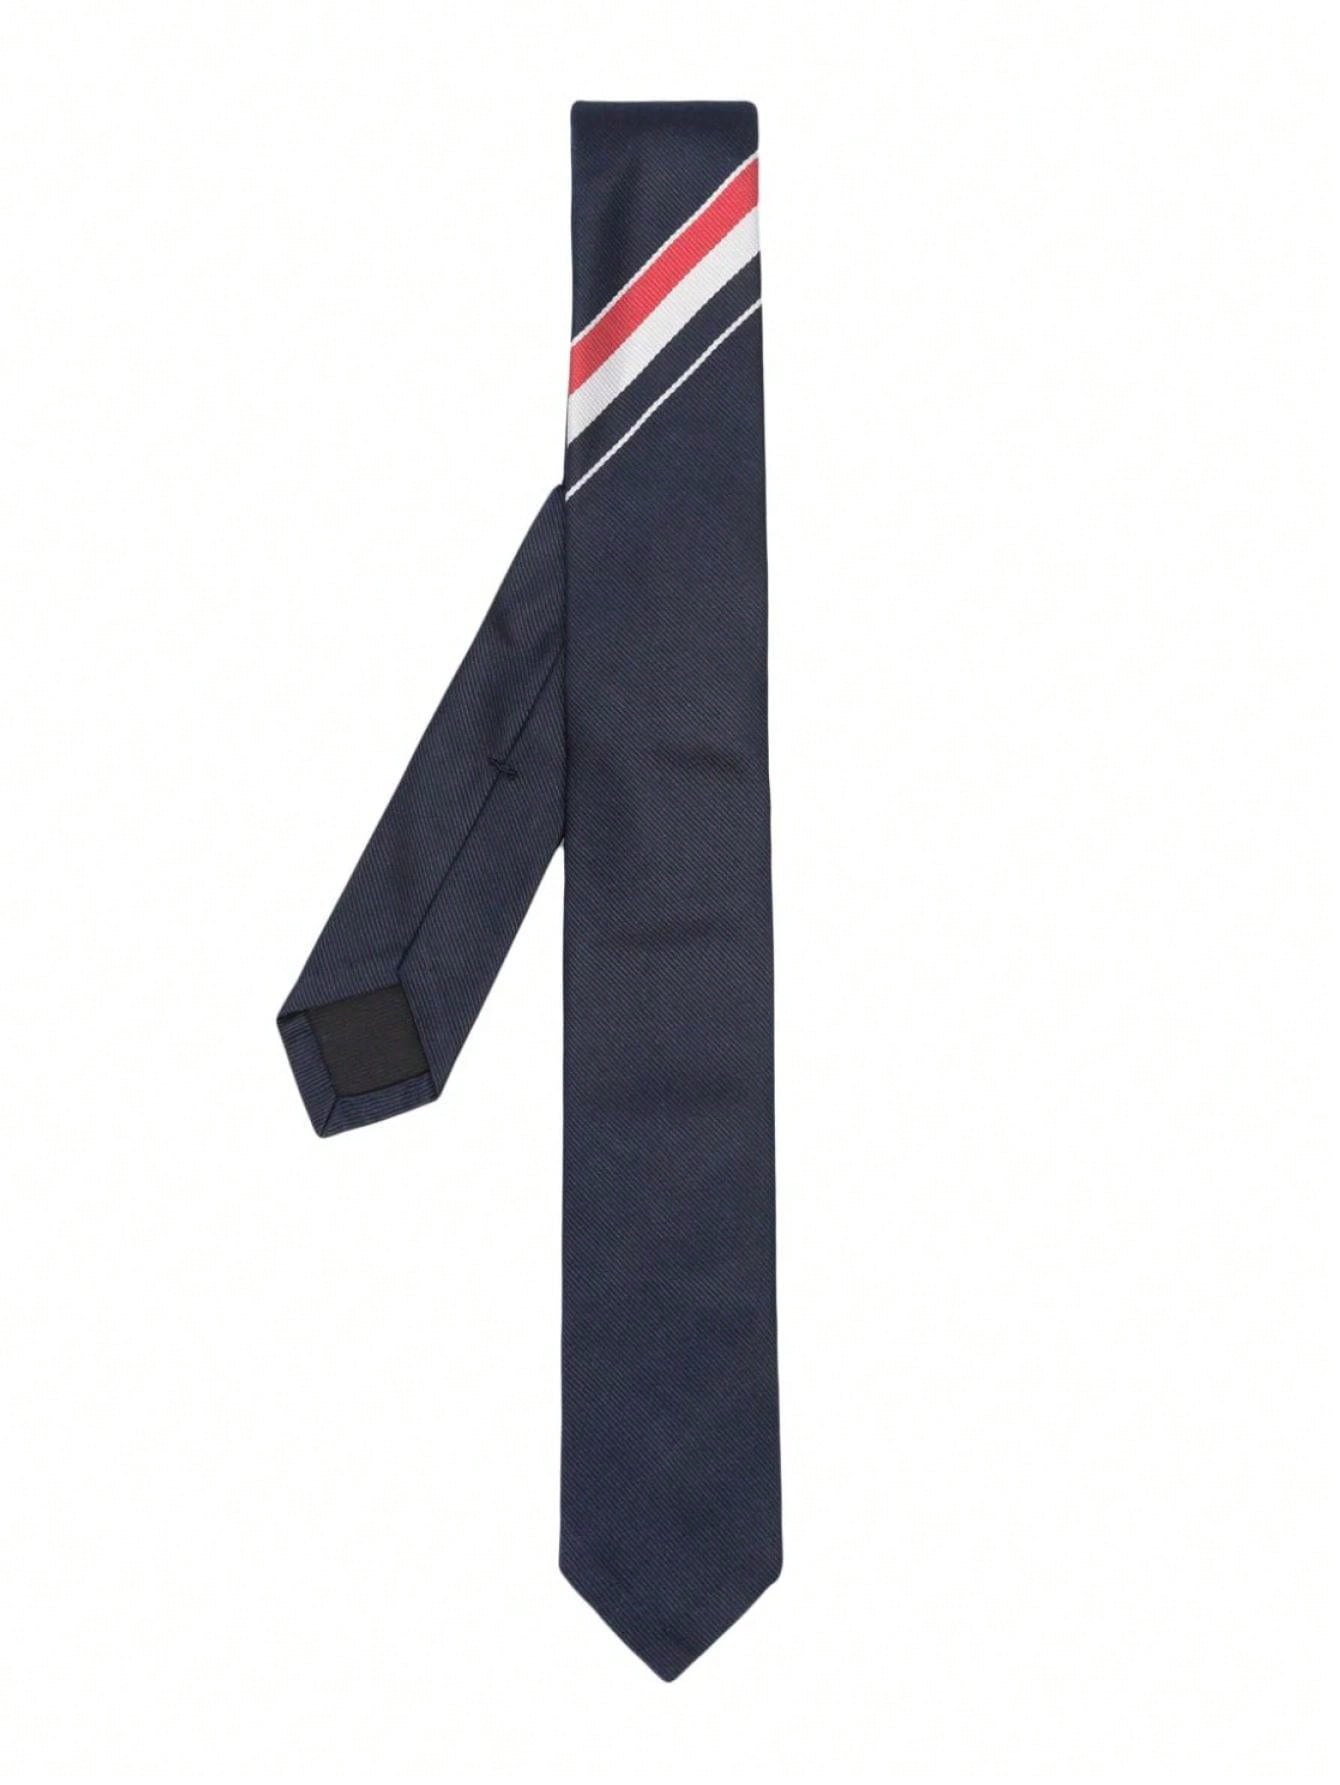 Мужской галстук Thom Browne ЧЕРНЫЙ MNL001AF0145415, черный мужские шапки thom browne decor mhc337ff0171960 красный